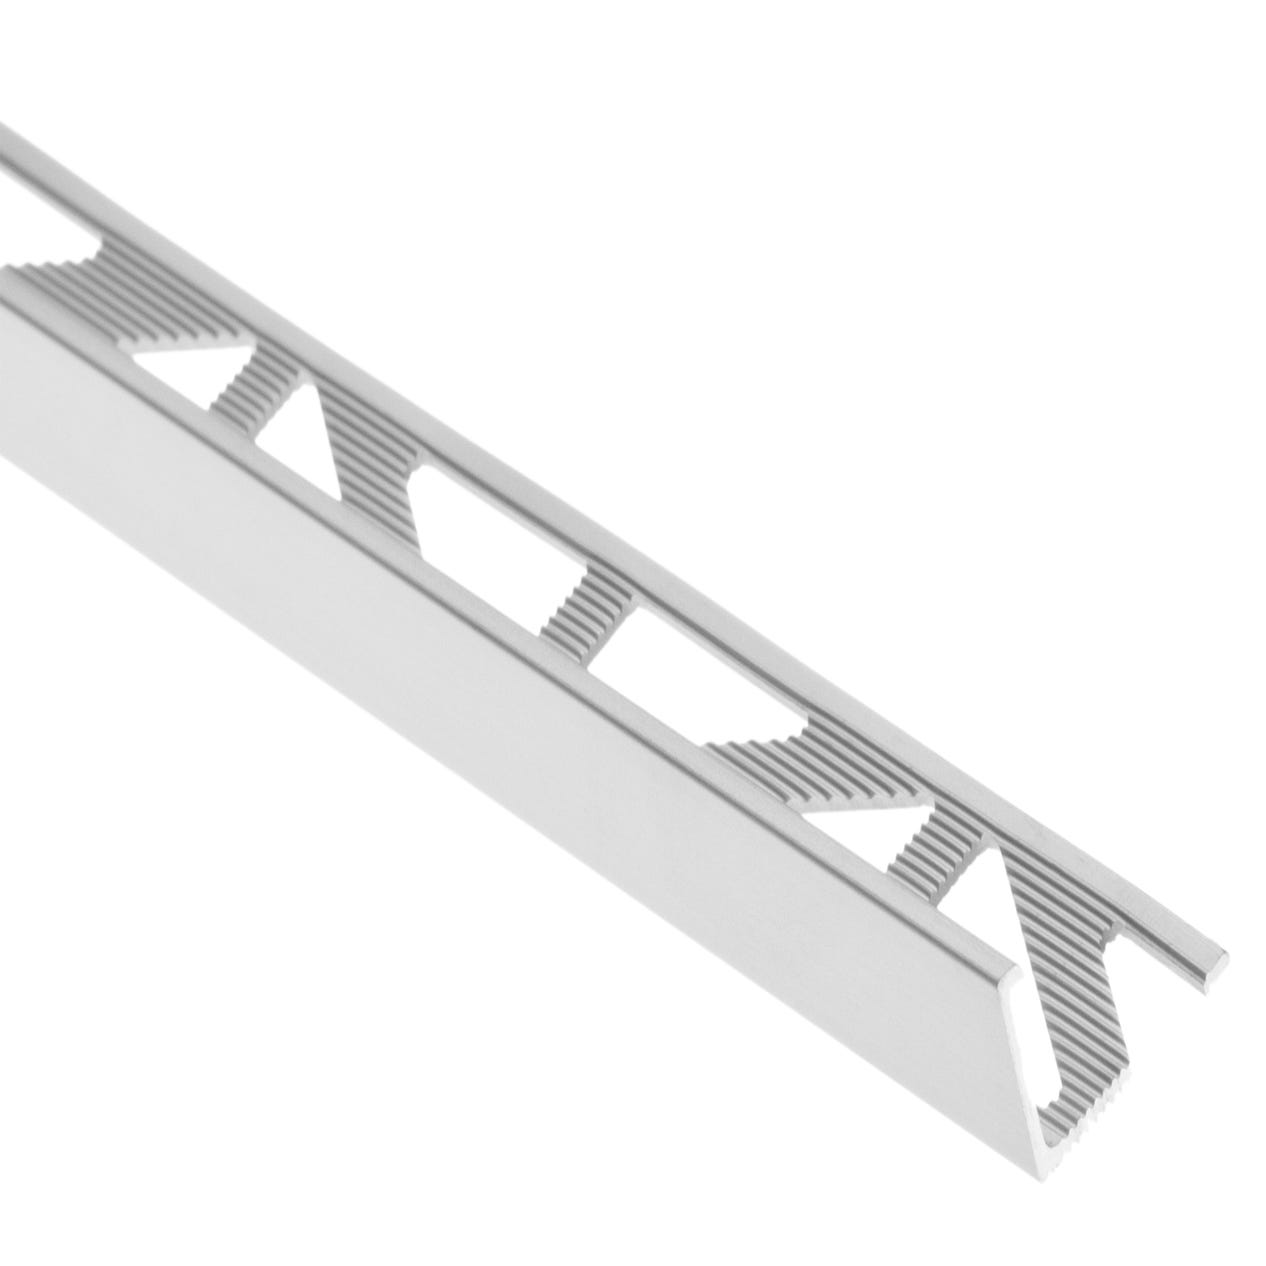 Cantonera aluminio (2,5 m x 2,5 cm x 2,5 cm, Aluminio, Plateado